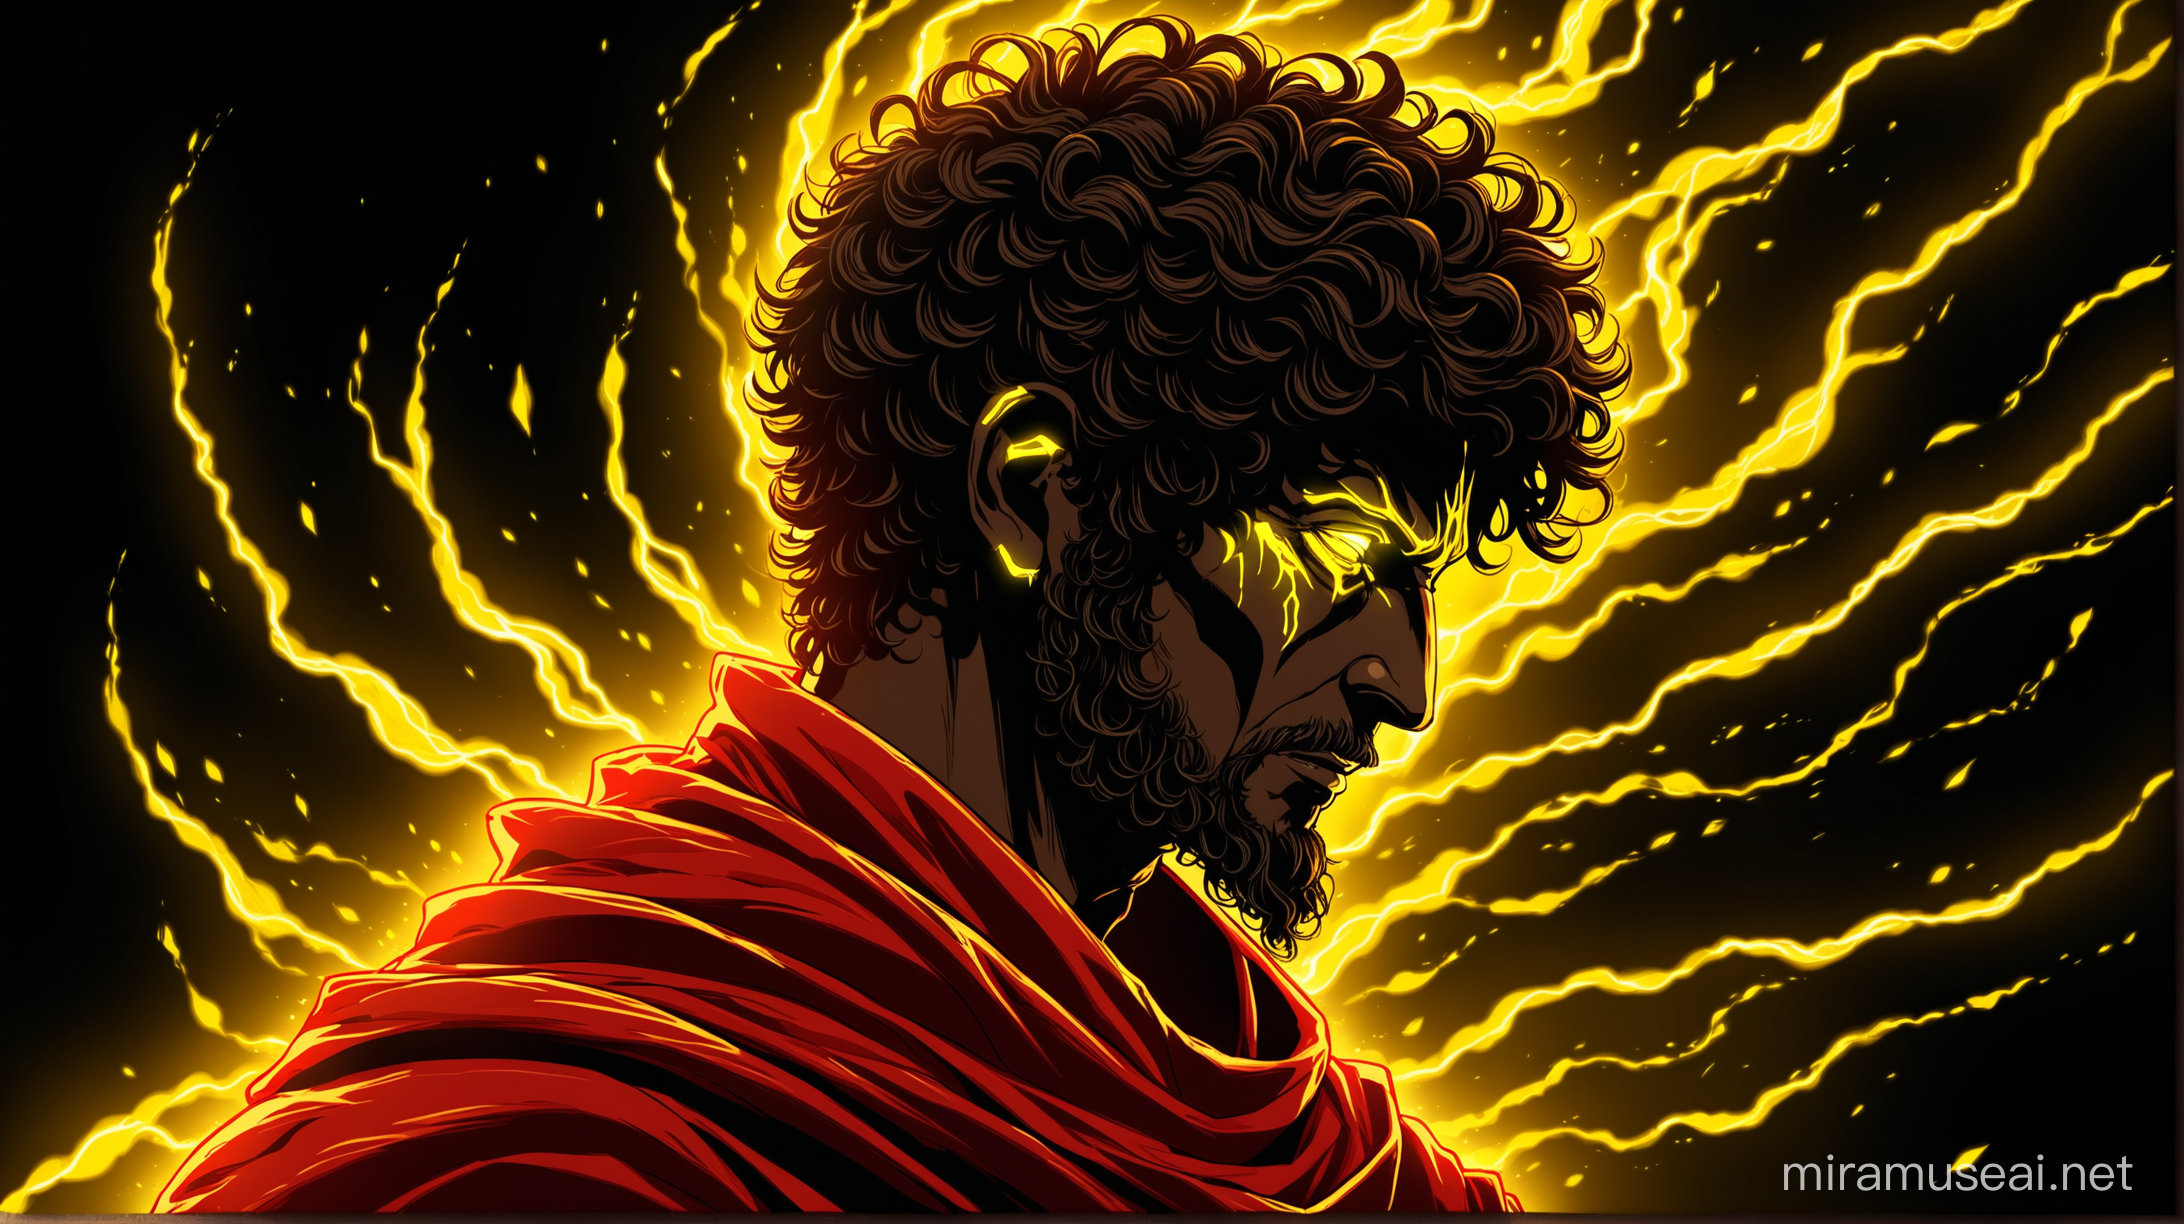 Neon Marcus Aurelius with Electrifying RedYellow Aura on Dark Background